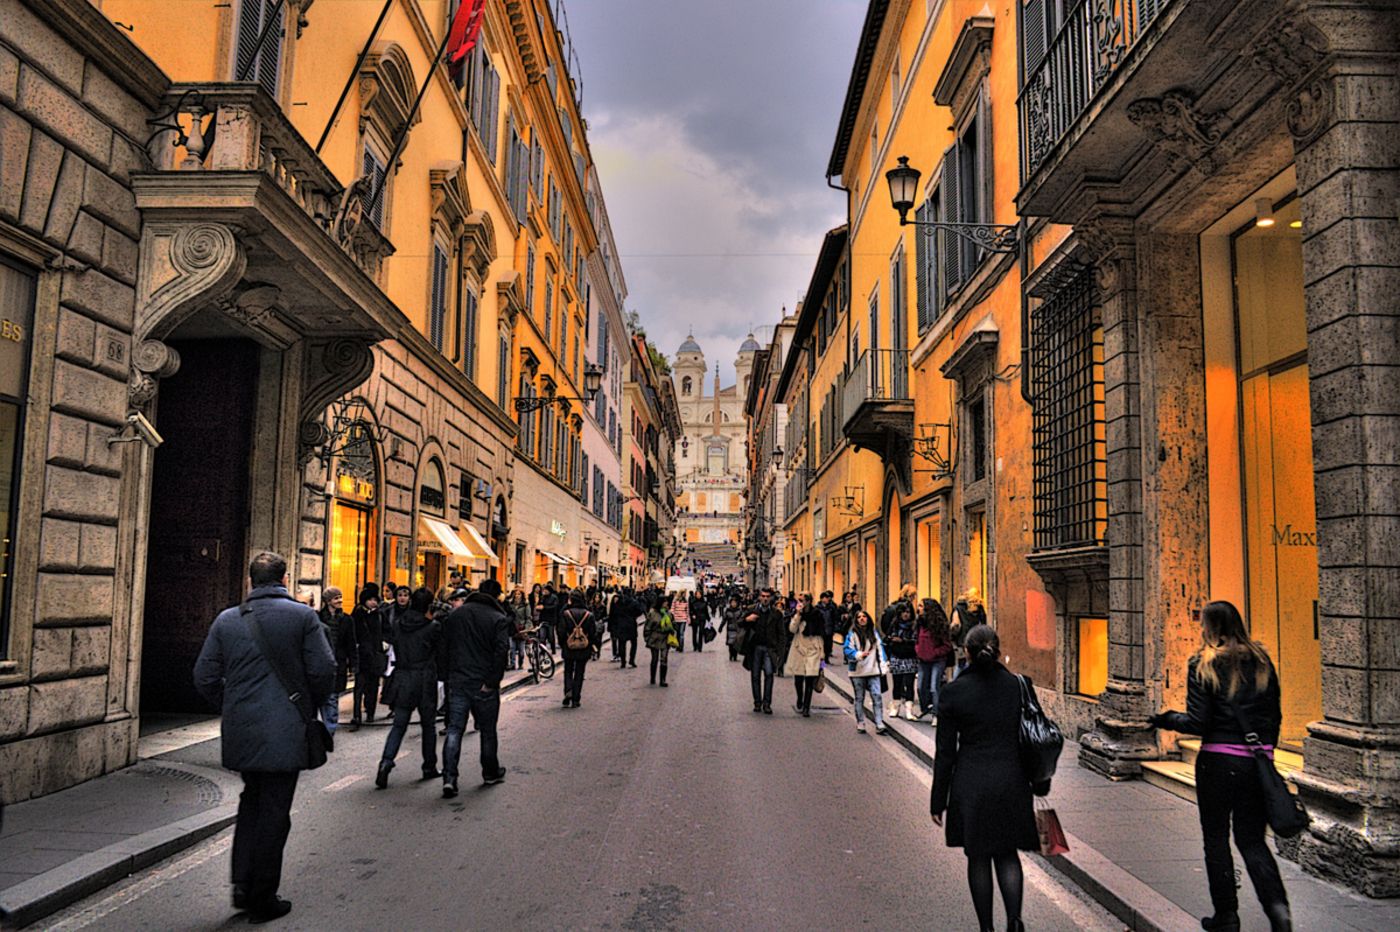 Известные улицы стран. ВИА дель Корсо в Риме. ВИА Кондотти в Риме. Улица via del Corso в Риме. Улица via Condotti в Риме.